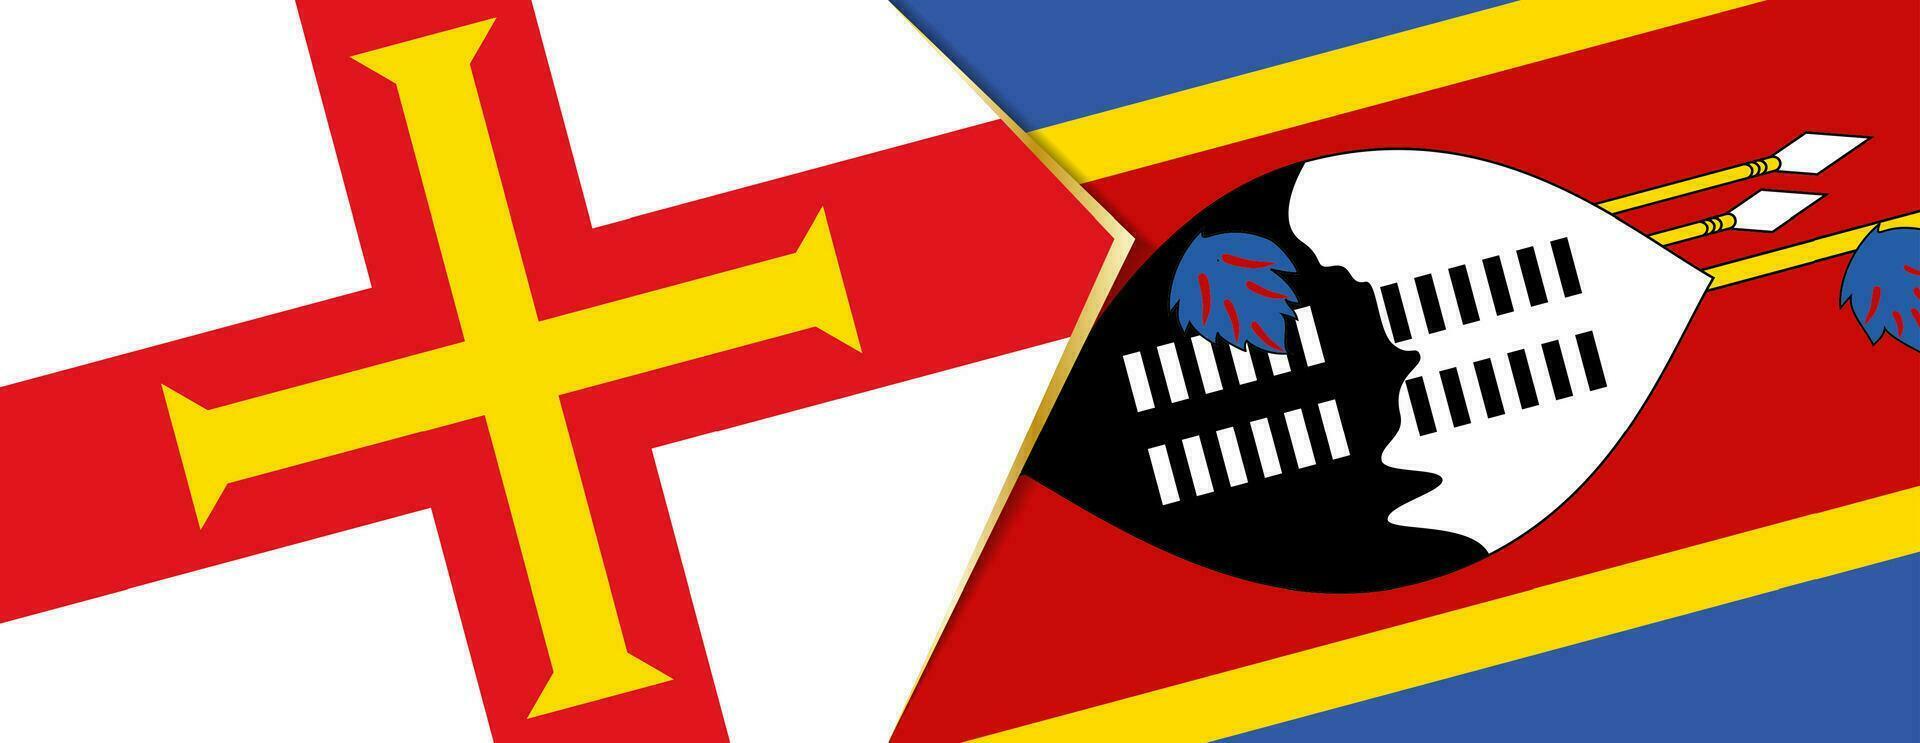 guernsey och swaziland flaggor, två vektor flaggor.